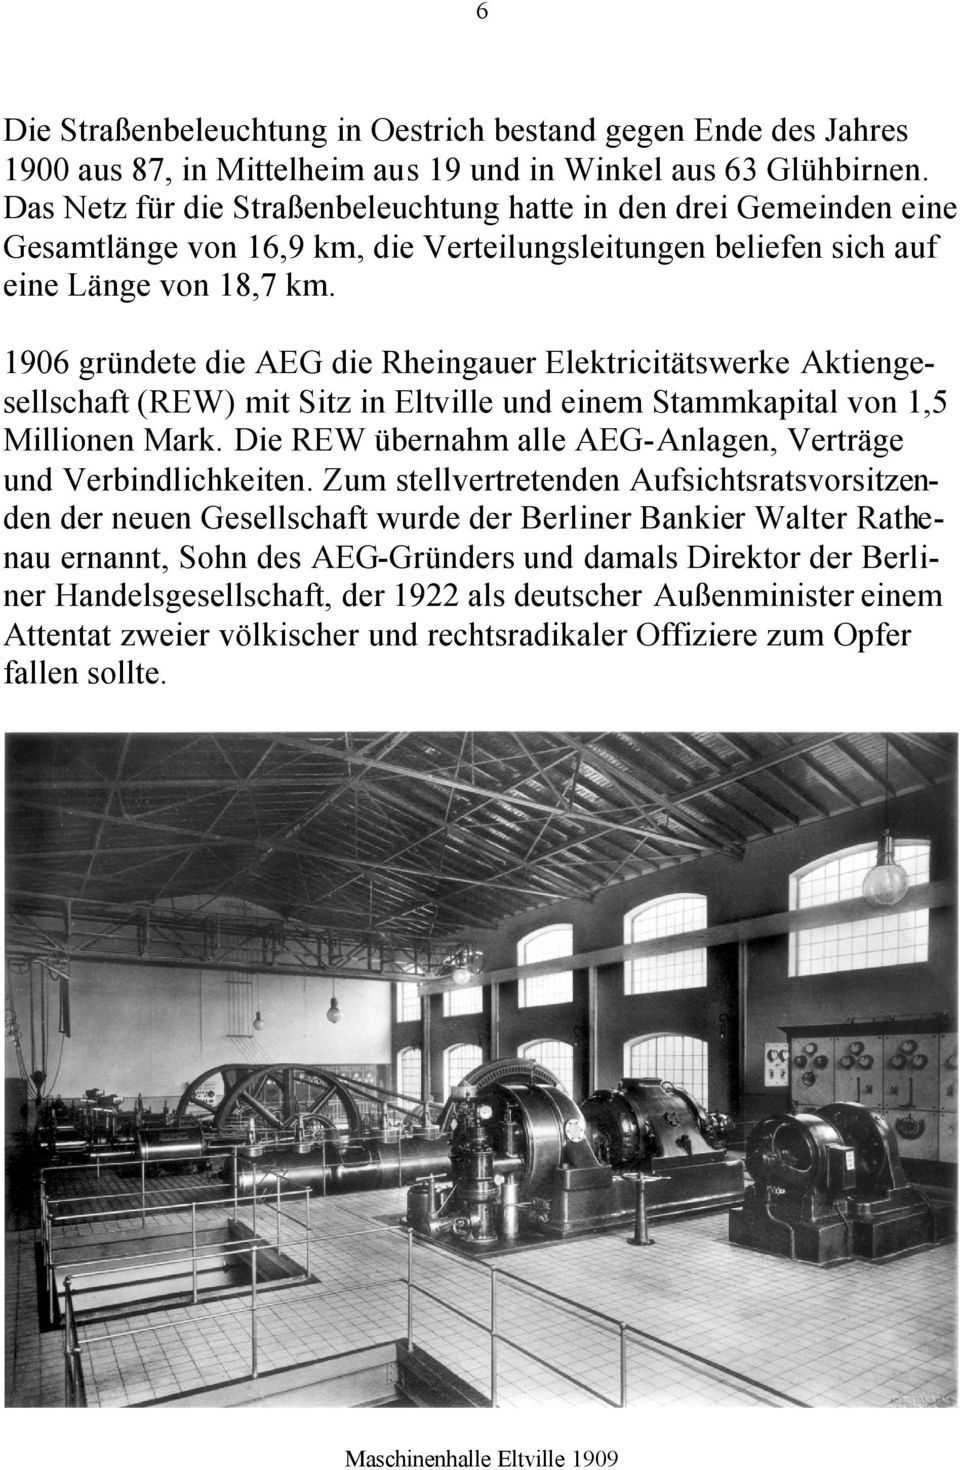 1906 gründete die AEG die Rheingauer Elektricitätswerke Aktiengesellschaft (REW) mit Sitz in Eltville und einem Stammkapital von 1,5 Millionen Mark.